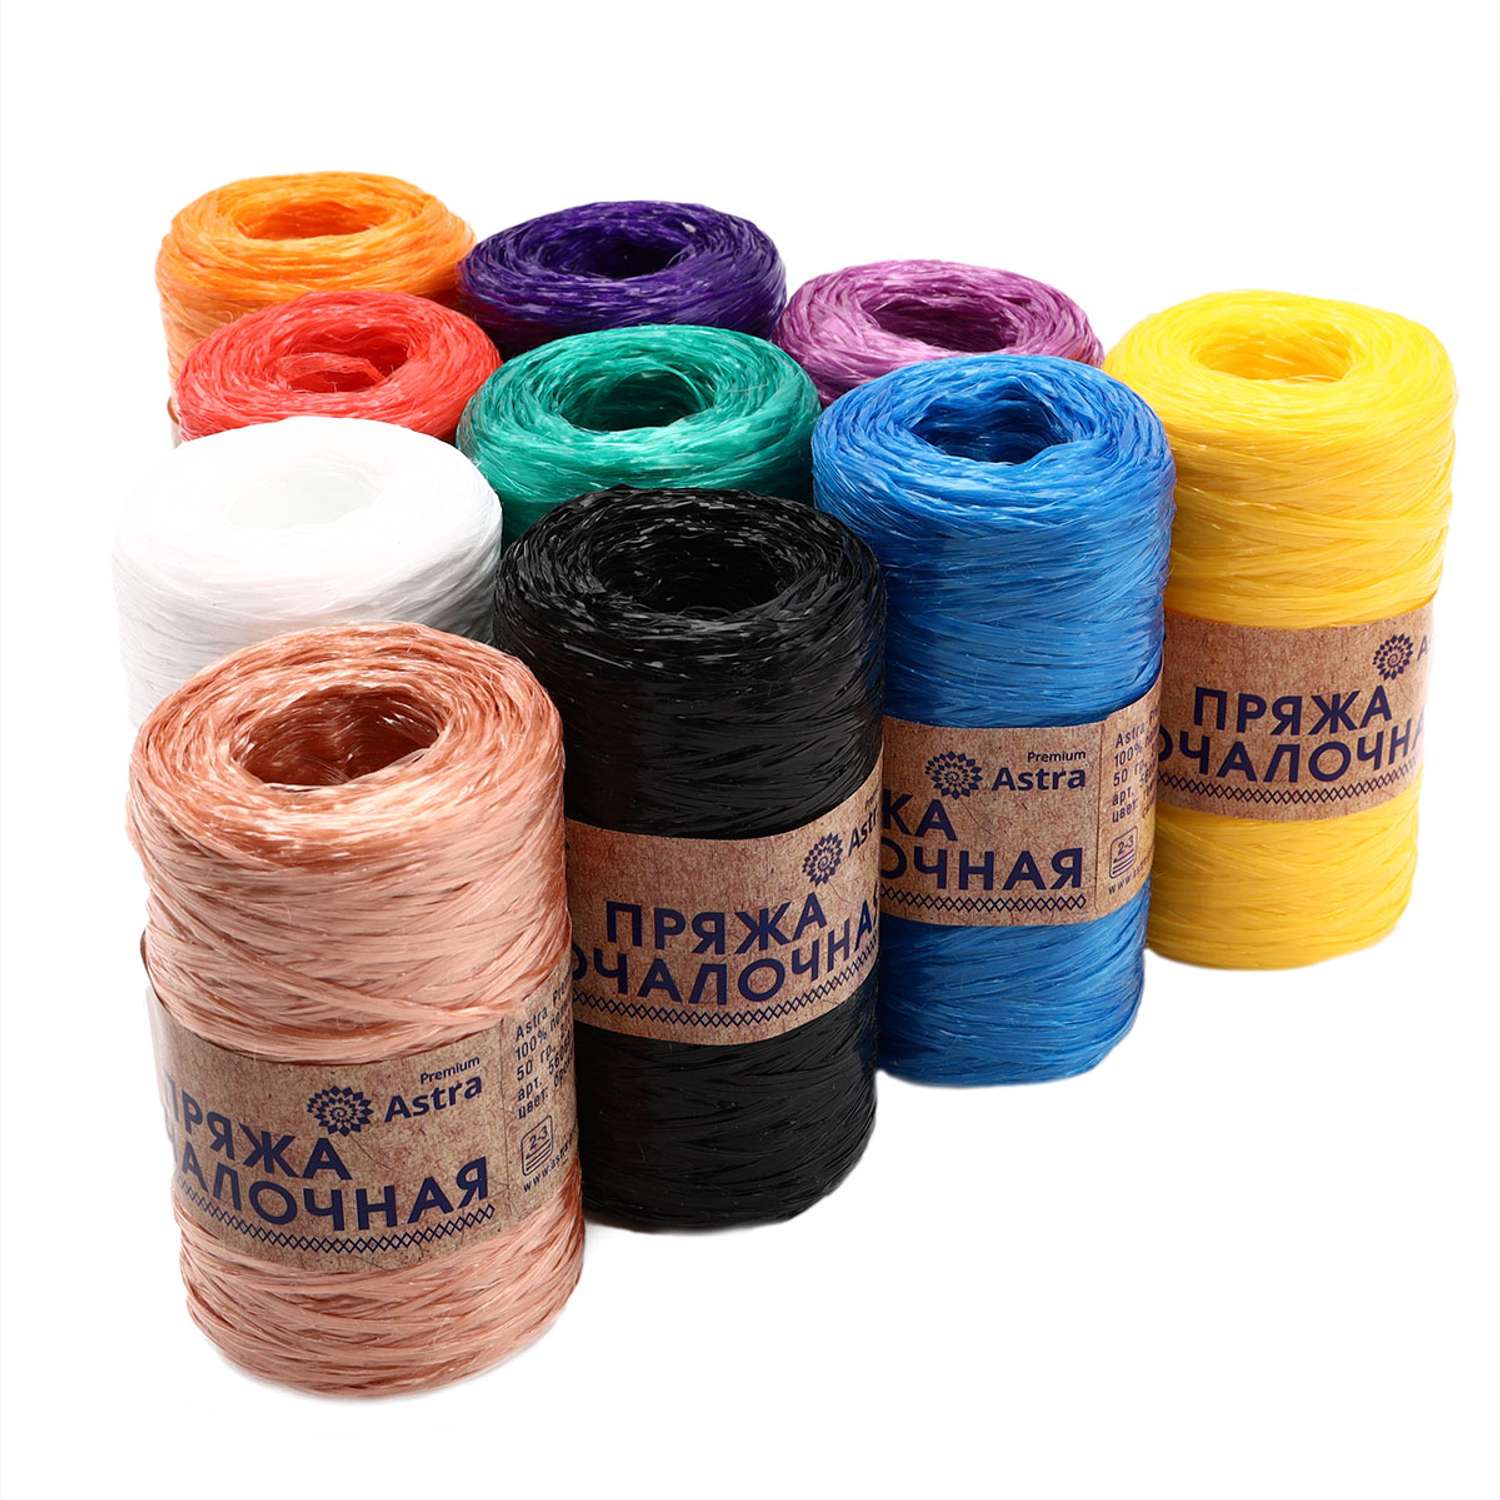 Пряжа Astra Premium для вязания мочалок пляжных сумок 200 м 10 шт разноцветные - фото 7